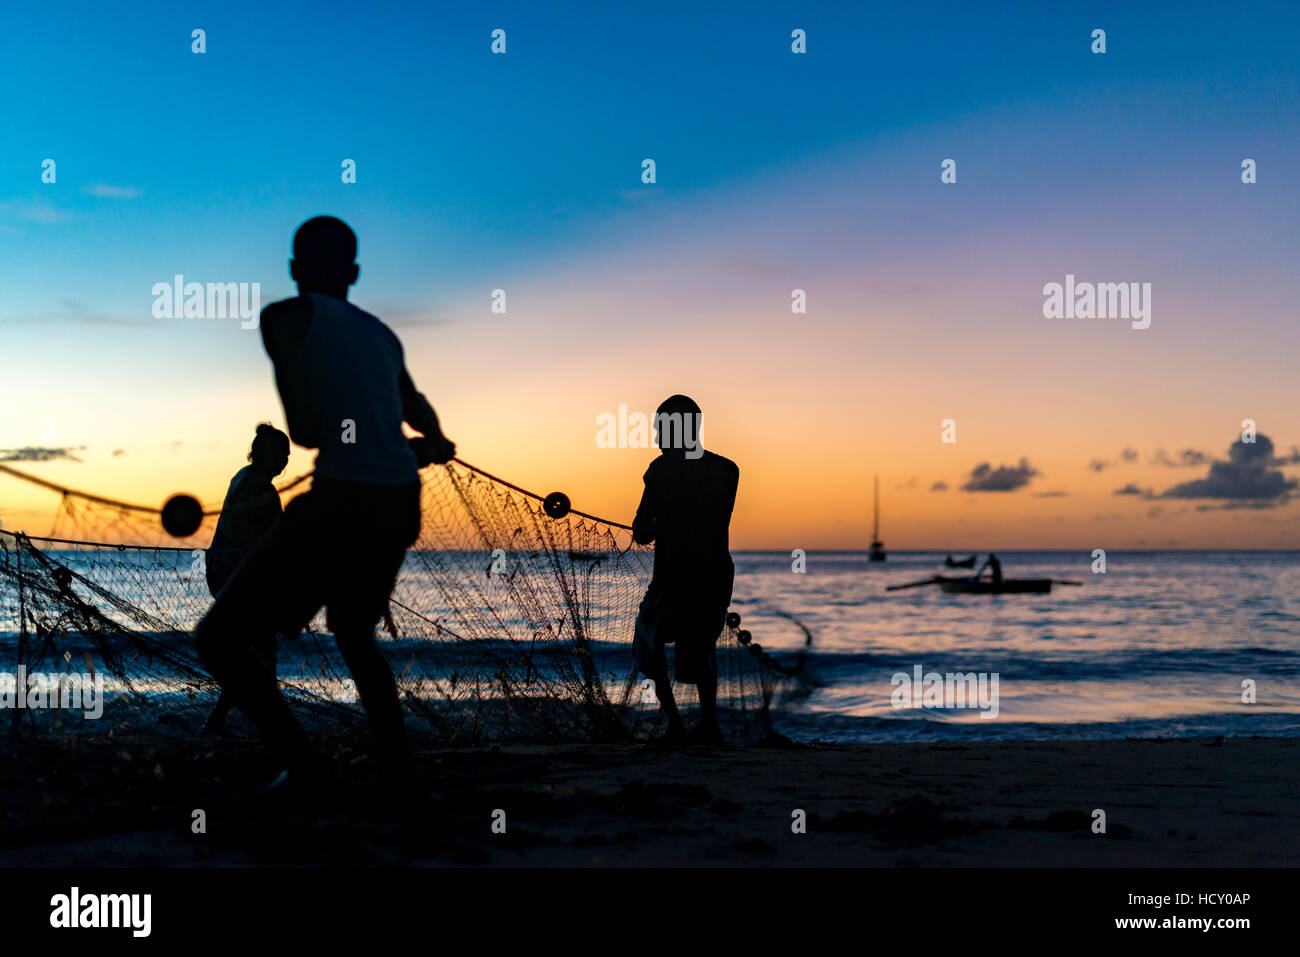 Seine net pescadores en un lance de la captura de peces en la Bahía de Castara, Trinidad y Tobago, Indias Occidentales, el Caribe Foto de stock